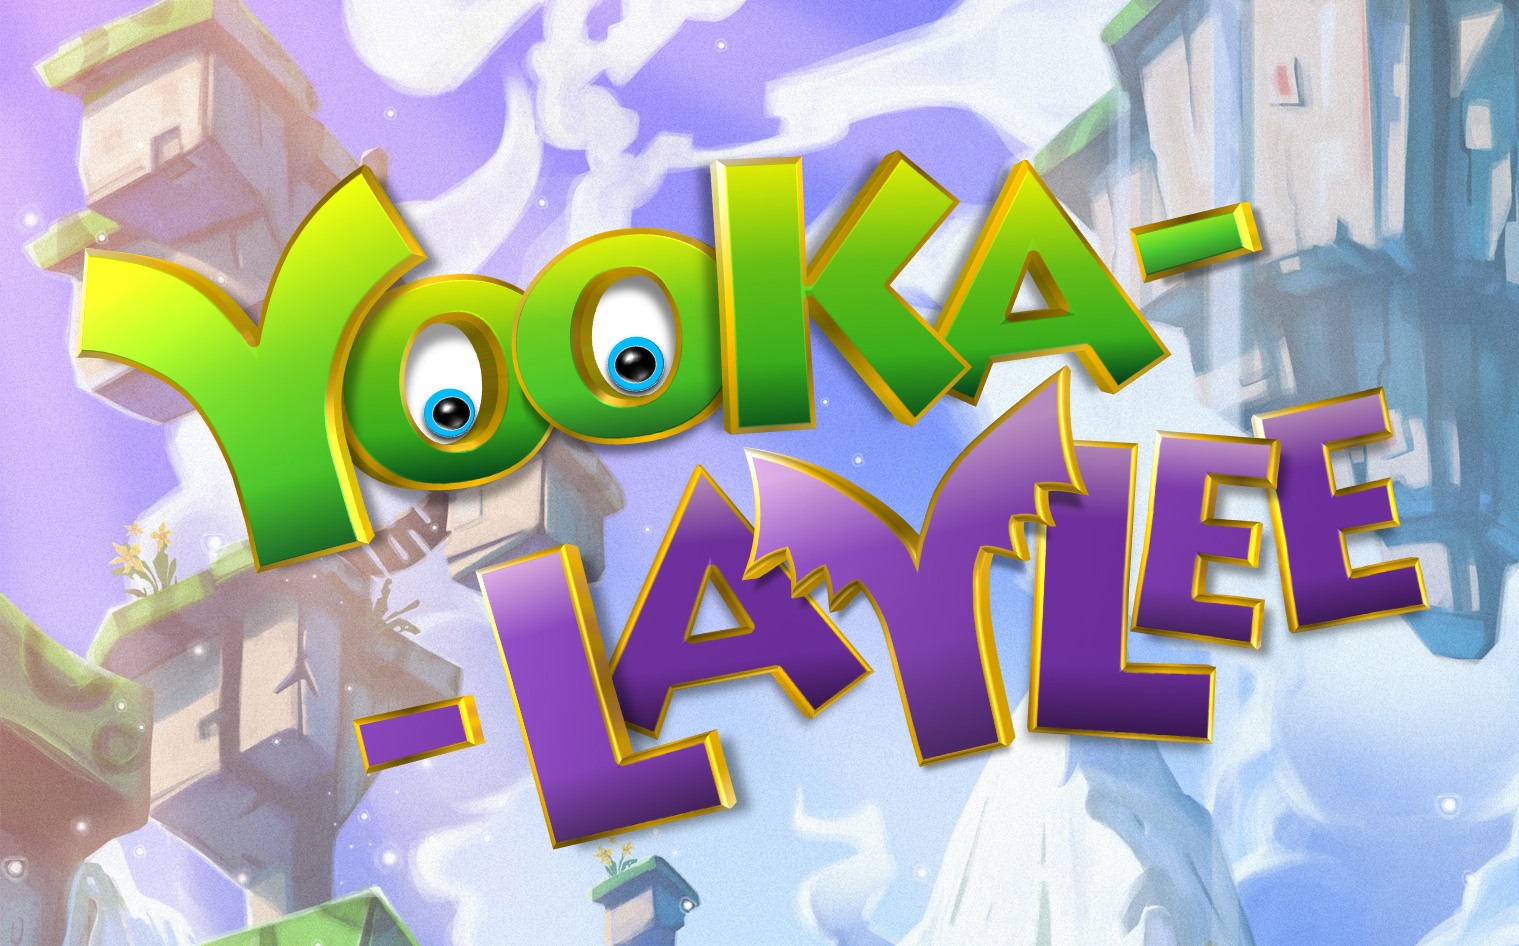 Yooka-Laylee con modo local y Co-op y minijuegos